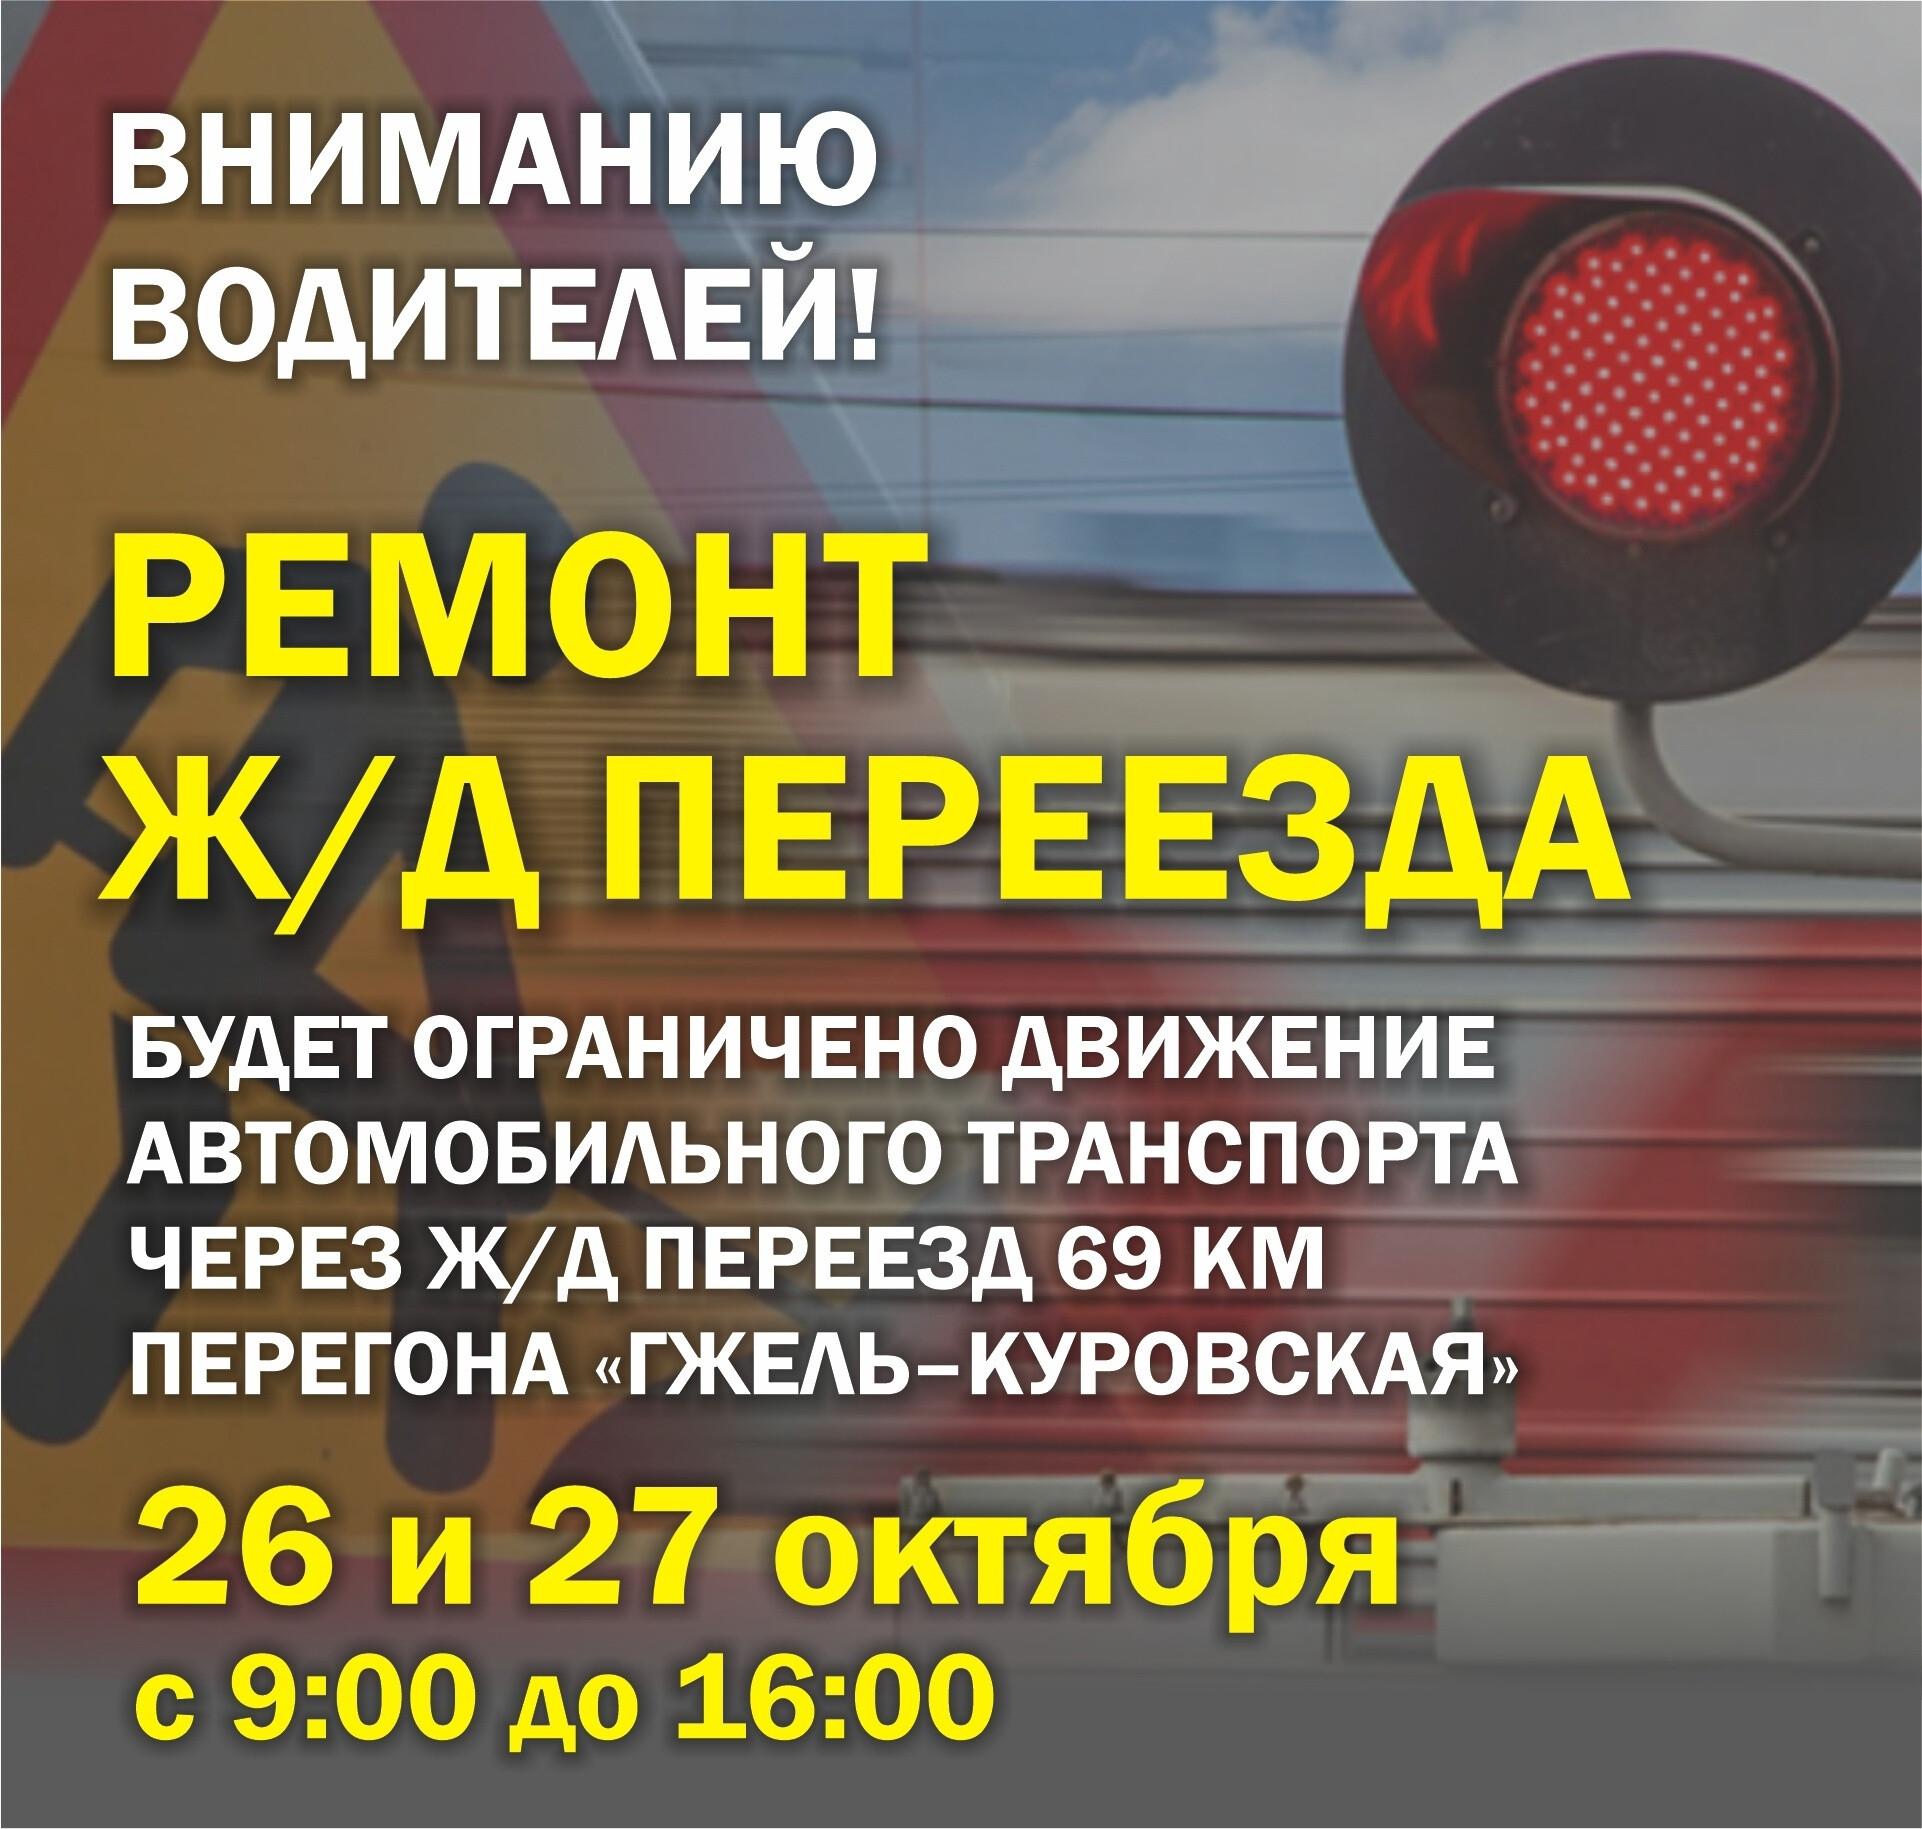 Движение автомобилей через ж/д переезд 69 км перегона «Гжель-Куровская» будет закрыто